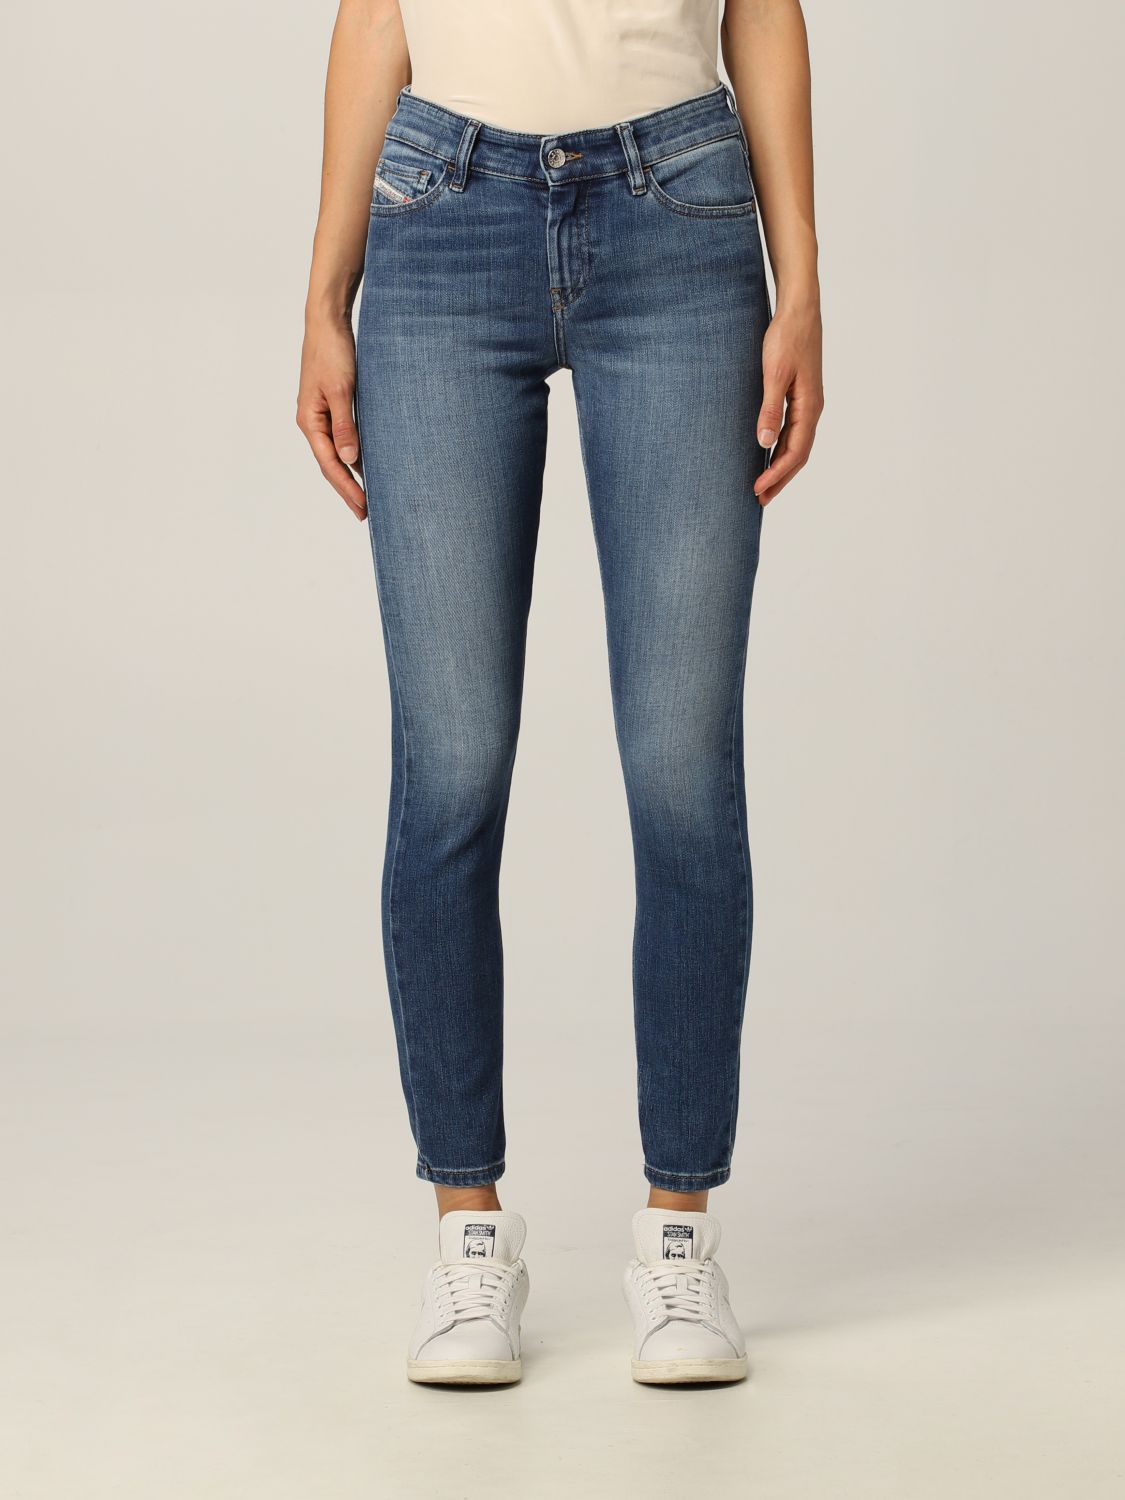 DIESEL: Super skinny fit Slandy jeans - Denim | Jeans Diesel 00SXJM ...